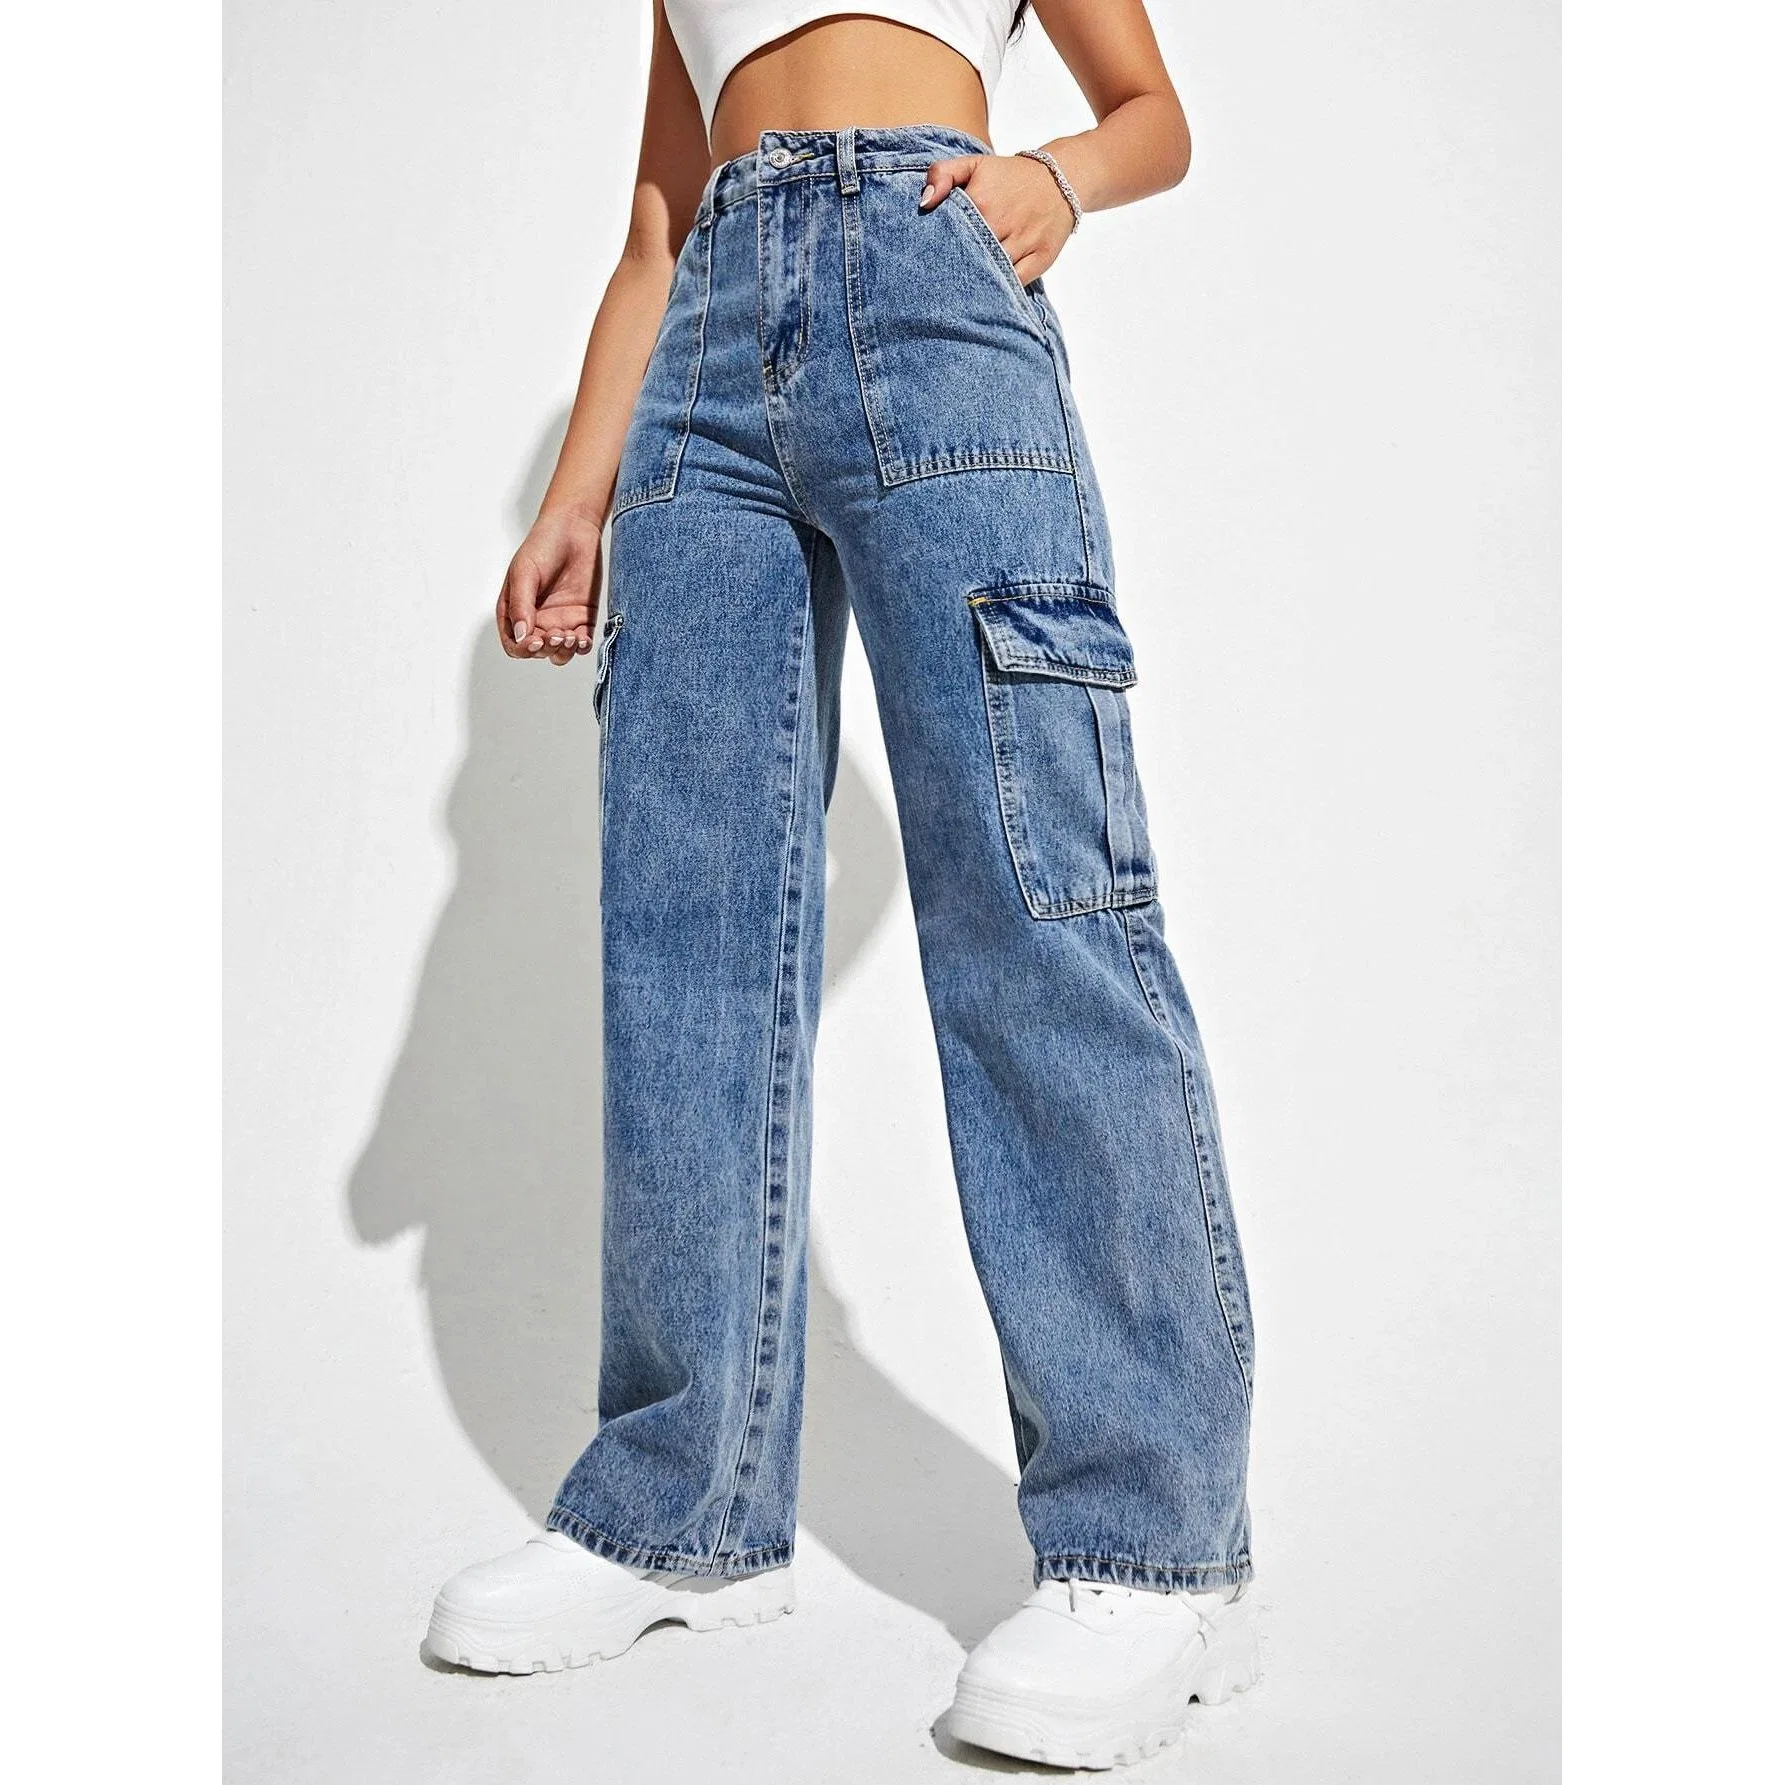 Mujeres de bolsillos grandes Jeans de mezclilla lavados Jeans de cintura alta sueltos Jeans rectos para mujeres